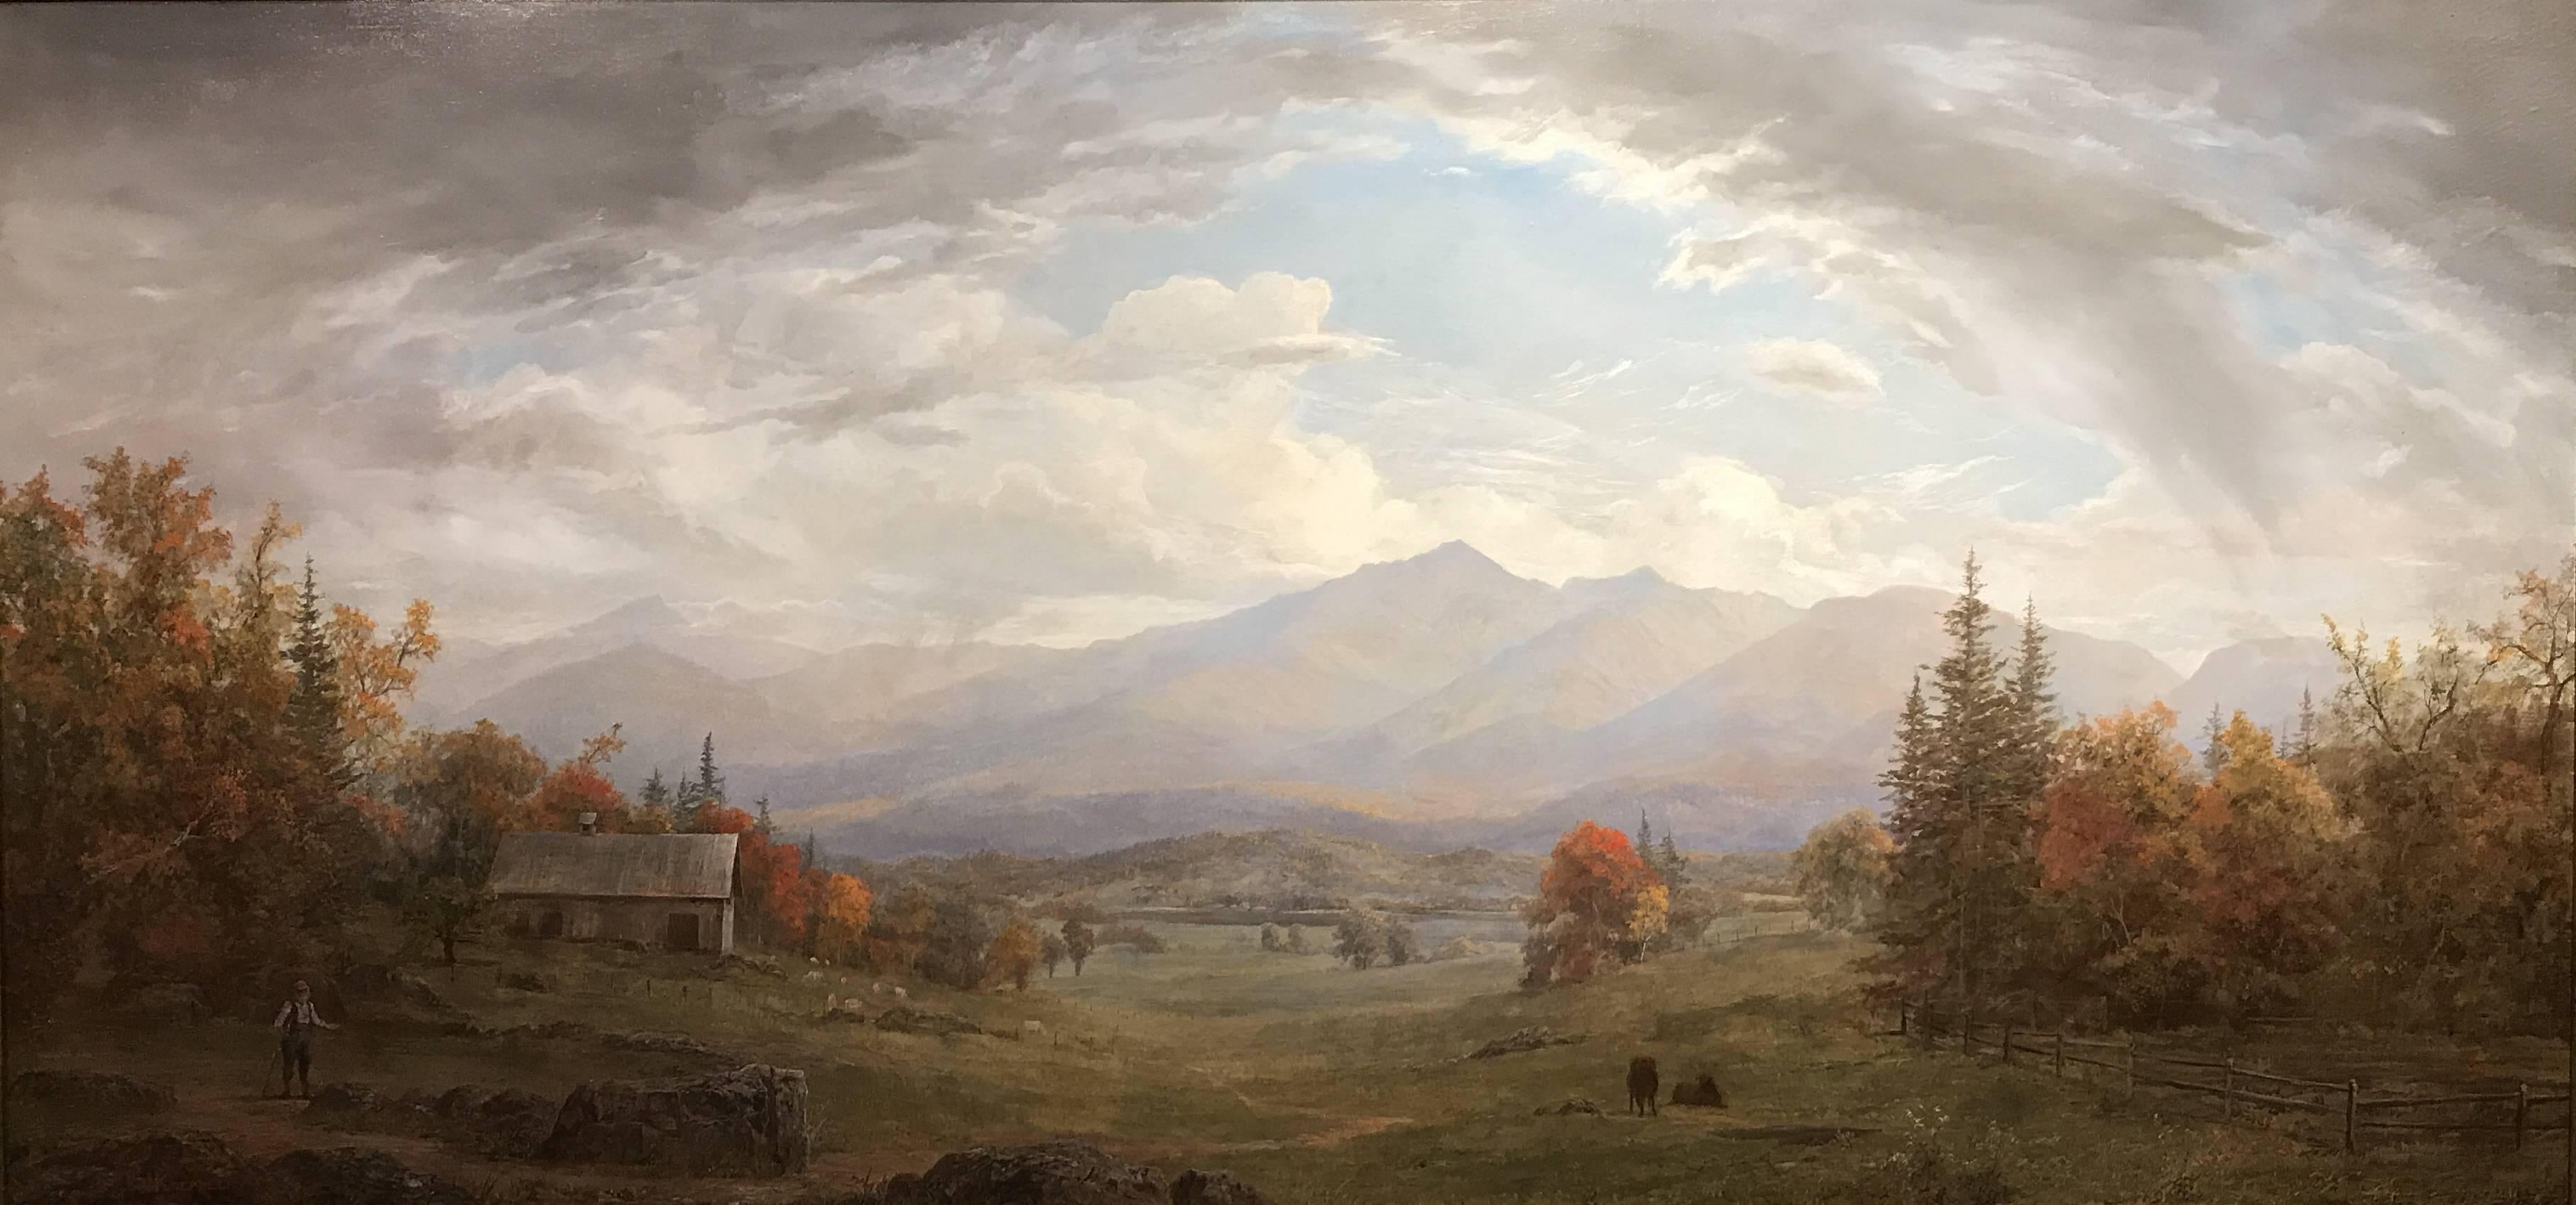 Mt. Lafayette aus Sugar Hill, NH – Painting von Erik Koeppel